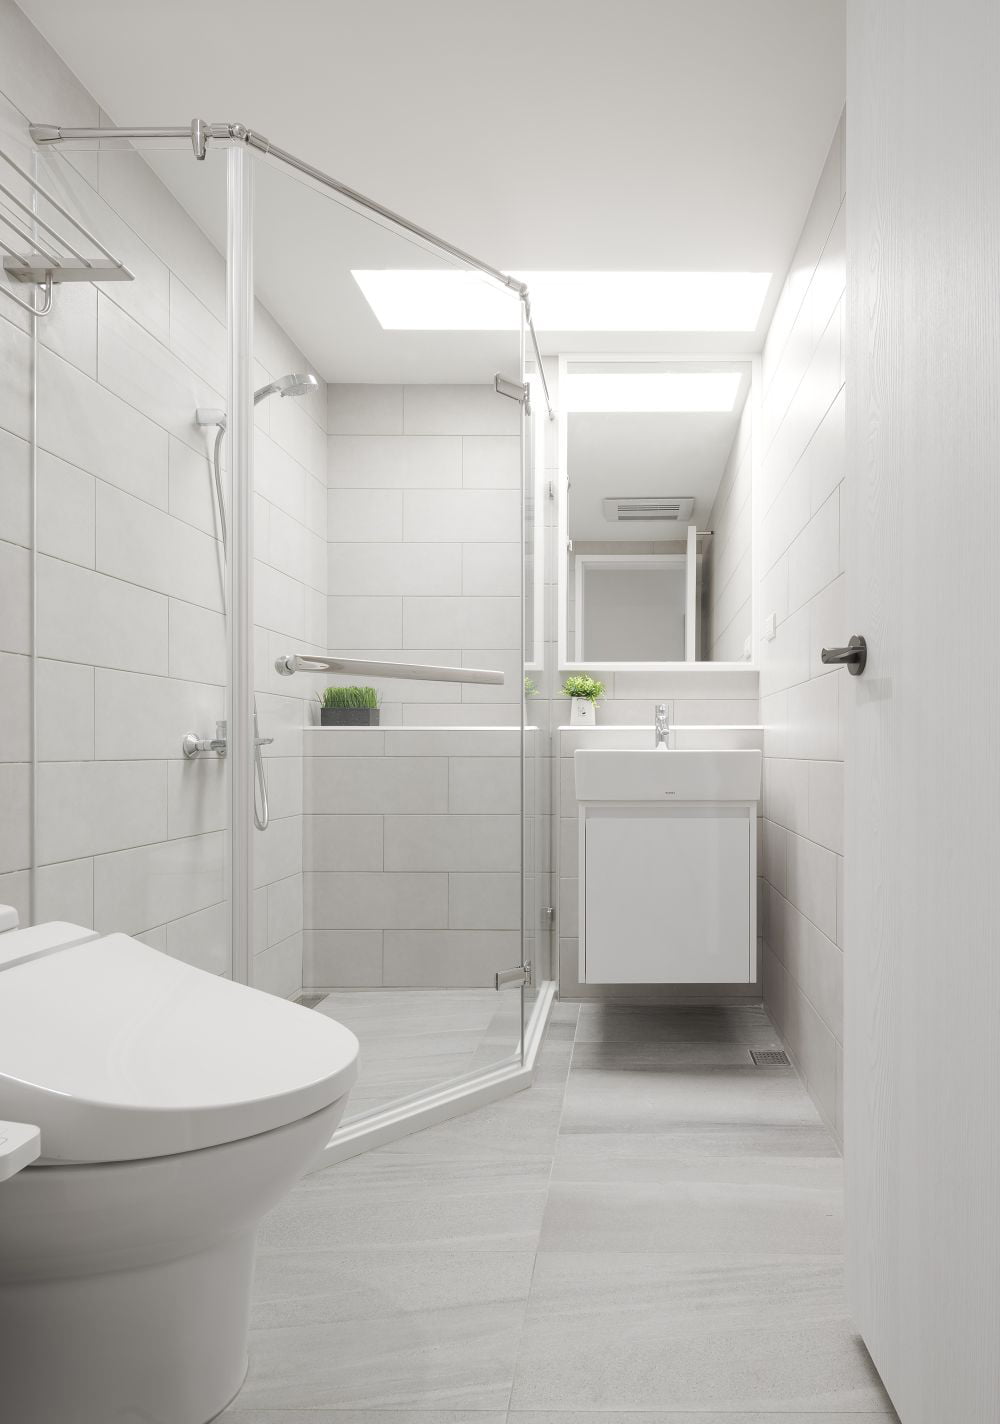 純白設計的浴室櫃, 清爽整潔